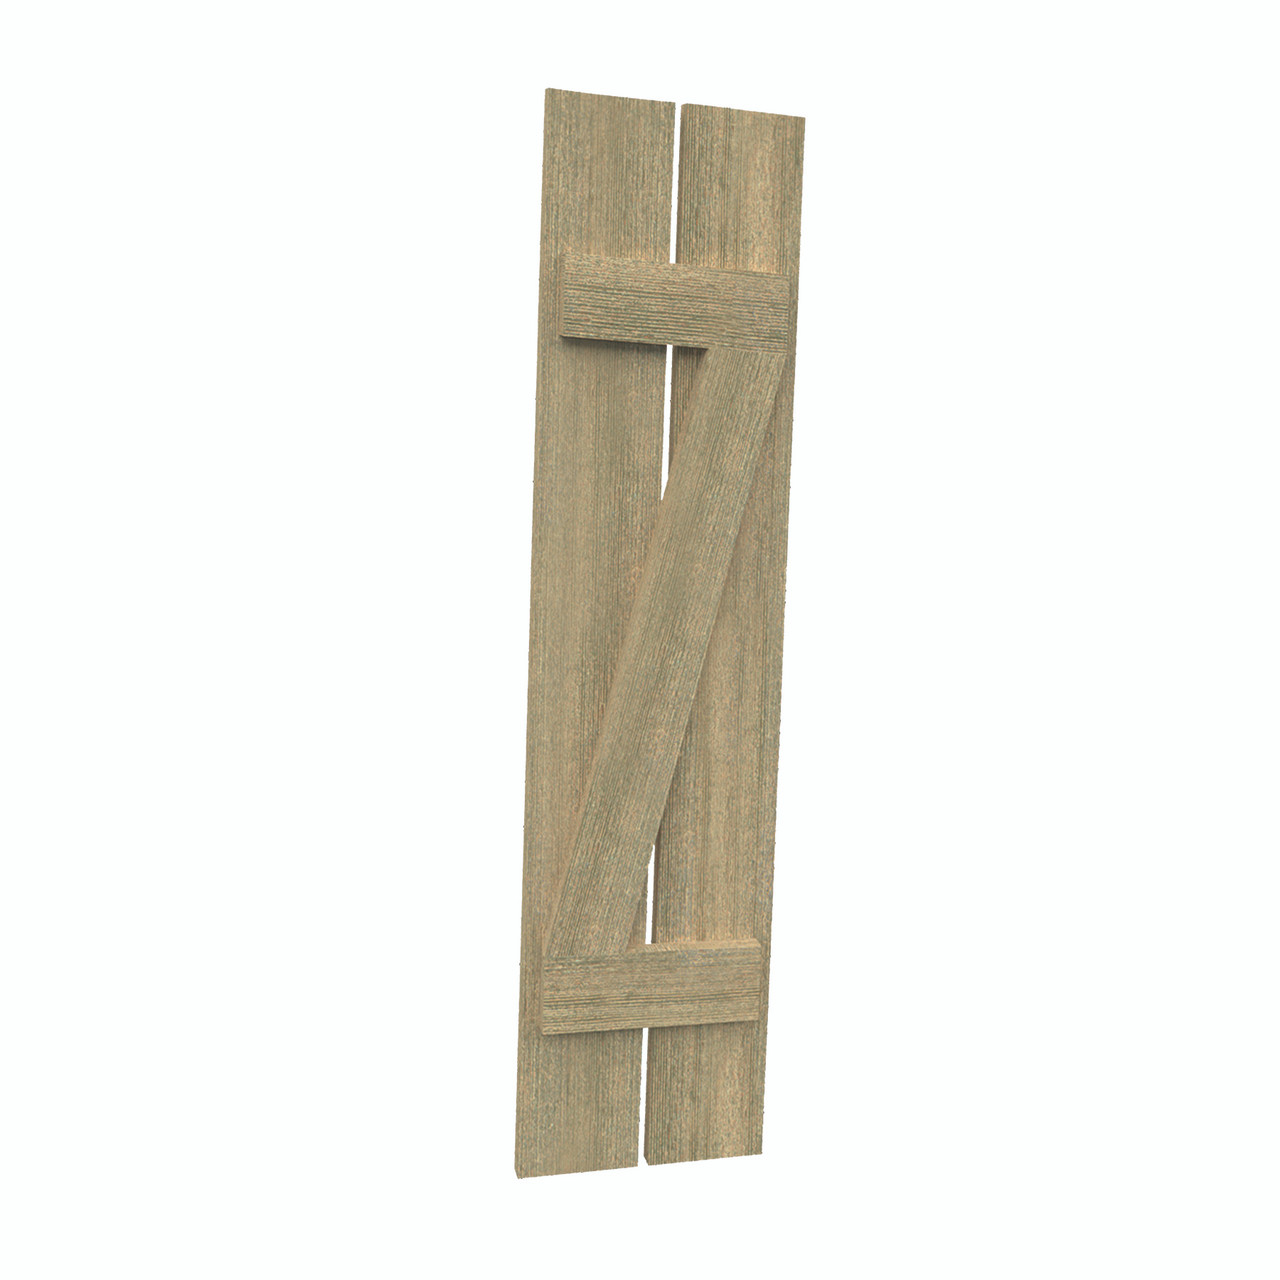 12 inch by 118 inch Plank Shutter with 2-Plank, Z-Batten